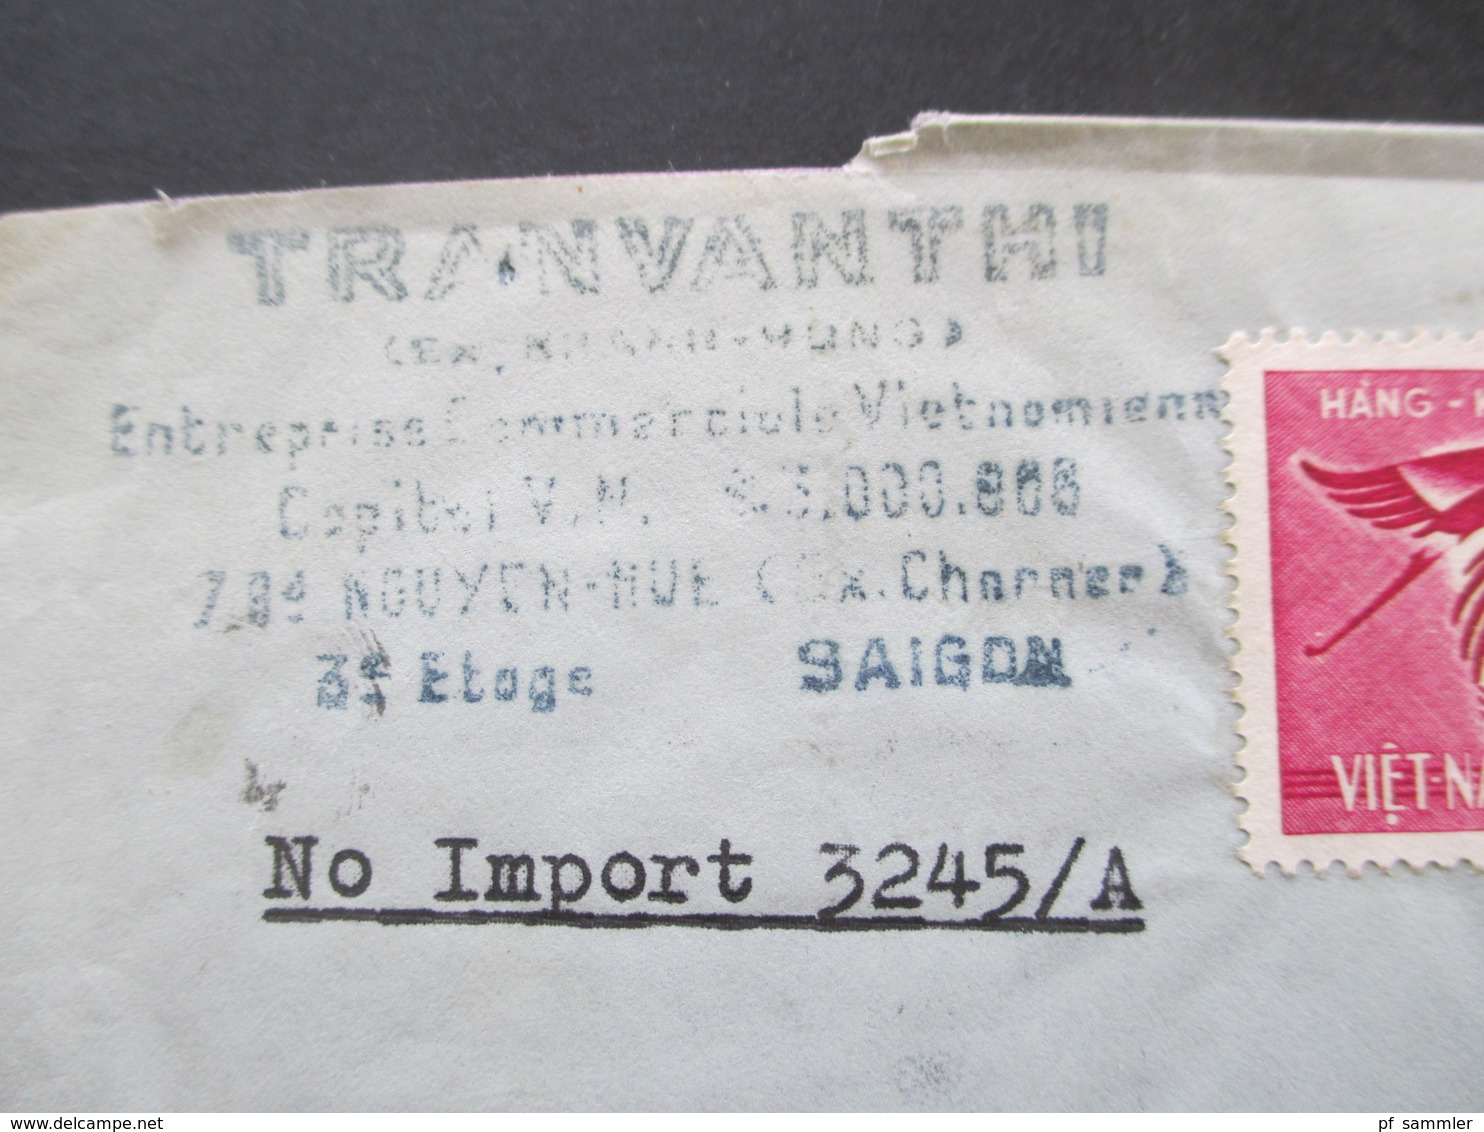 Vietnam / Süd Vietnam 1965 Auslandsbrief Firmenbrief Nach Schweden Air Mail / Luftpost Gommage Tropical - Viêt-Nam